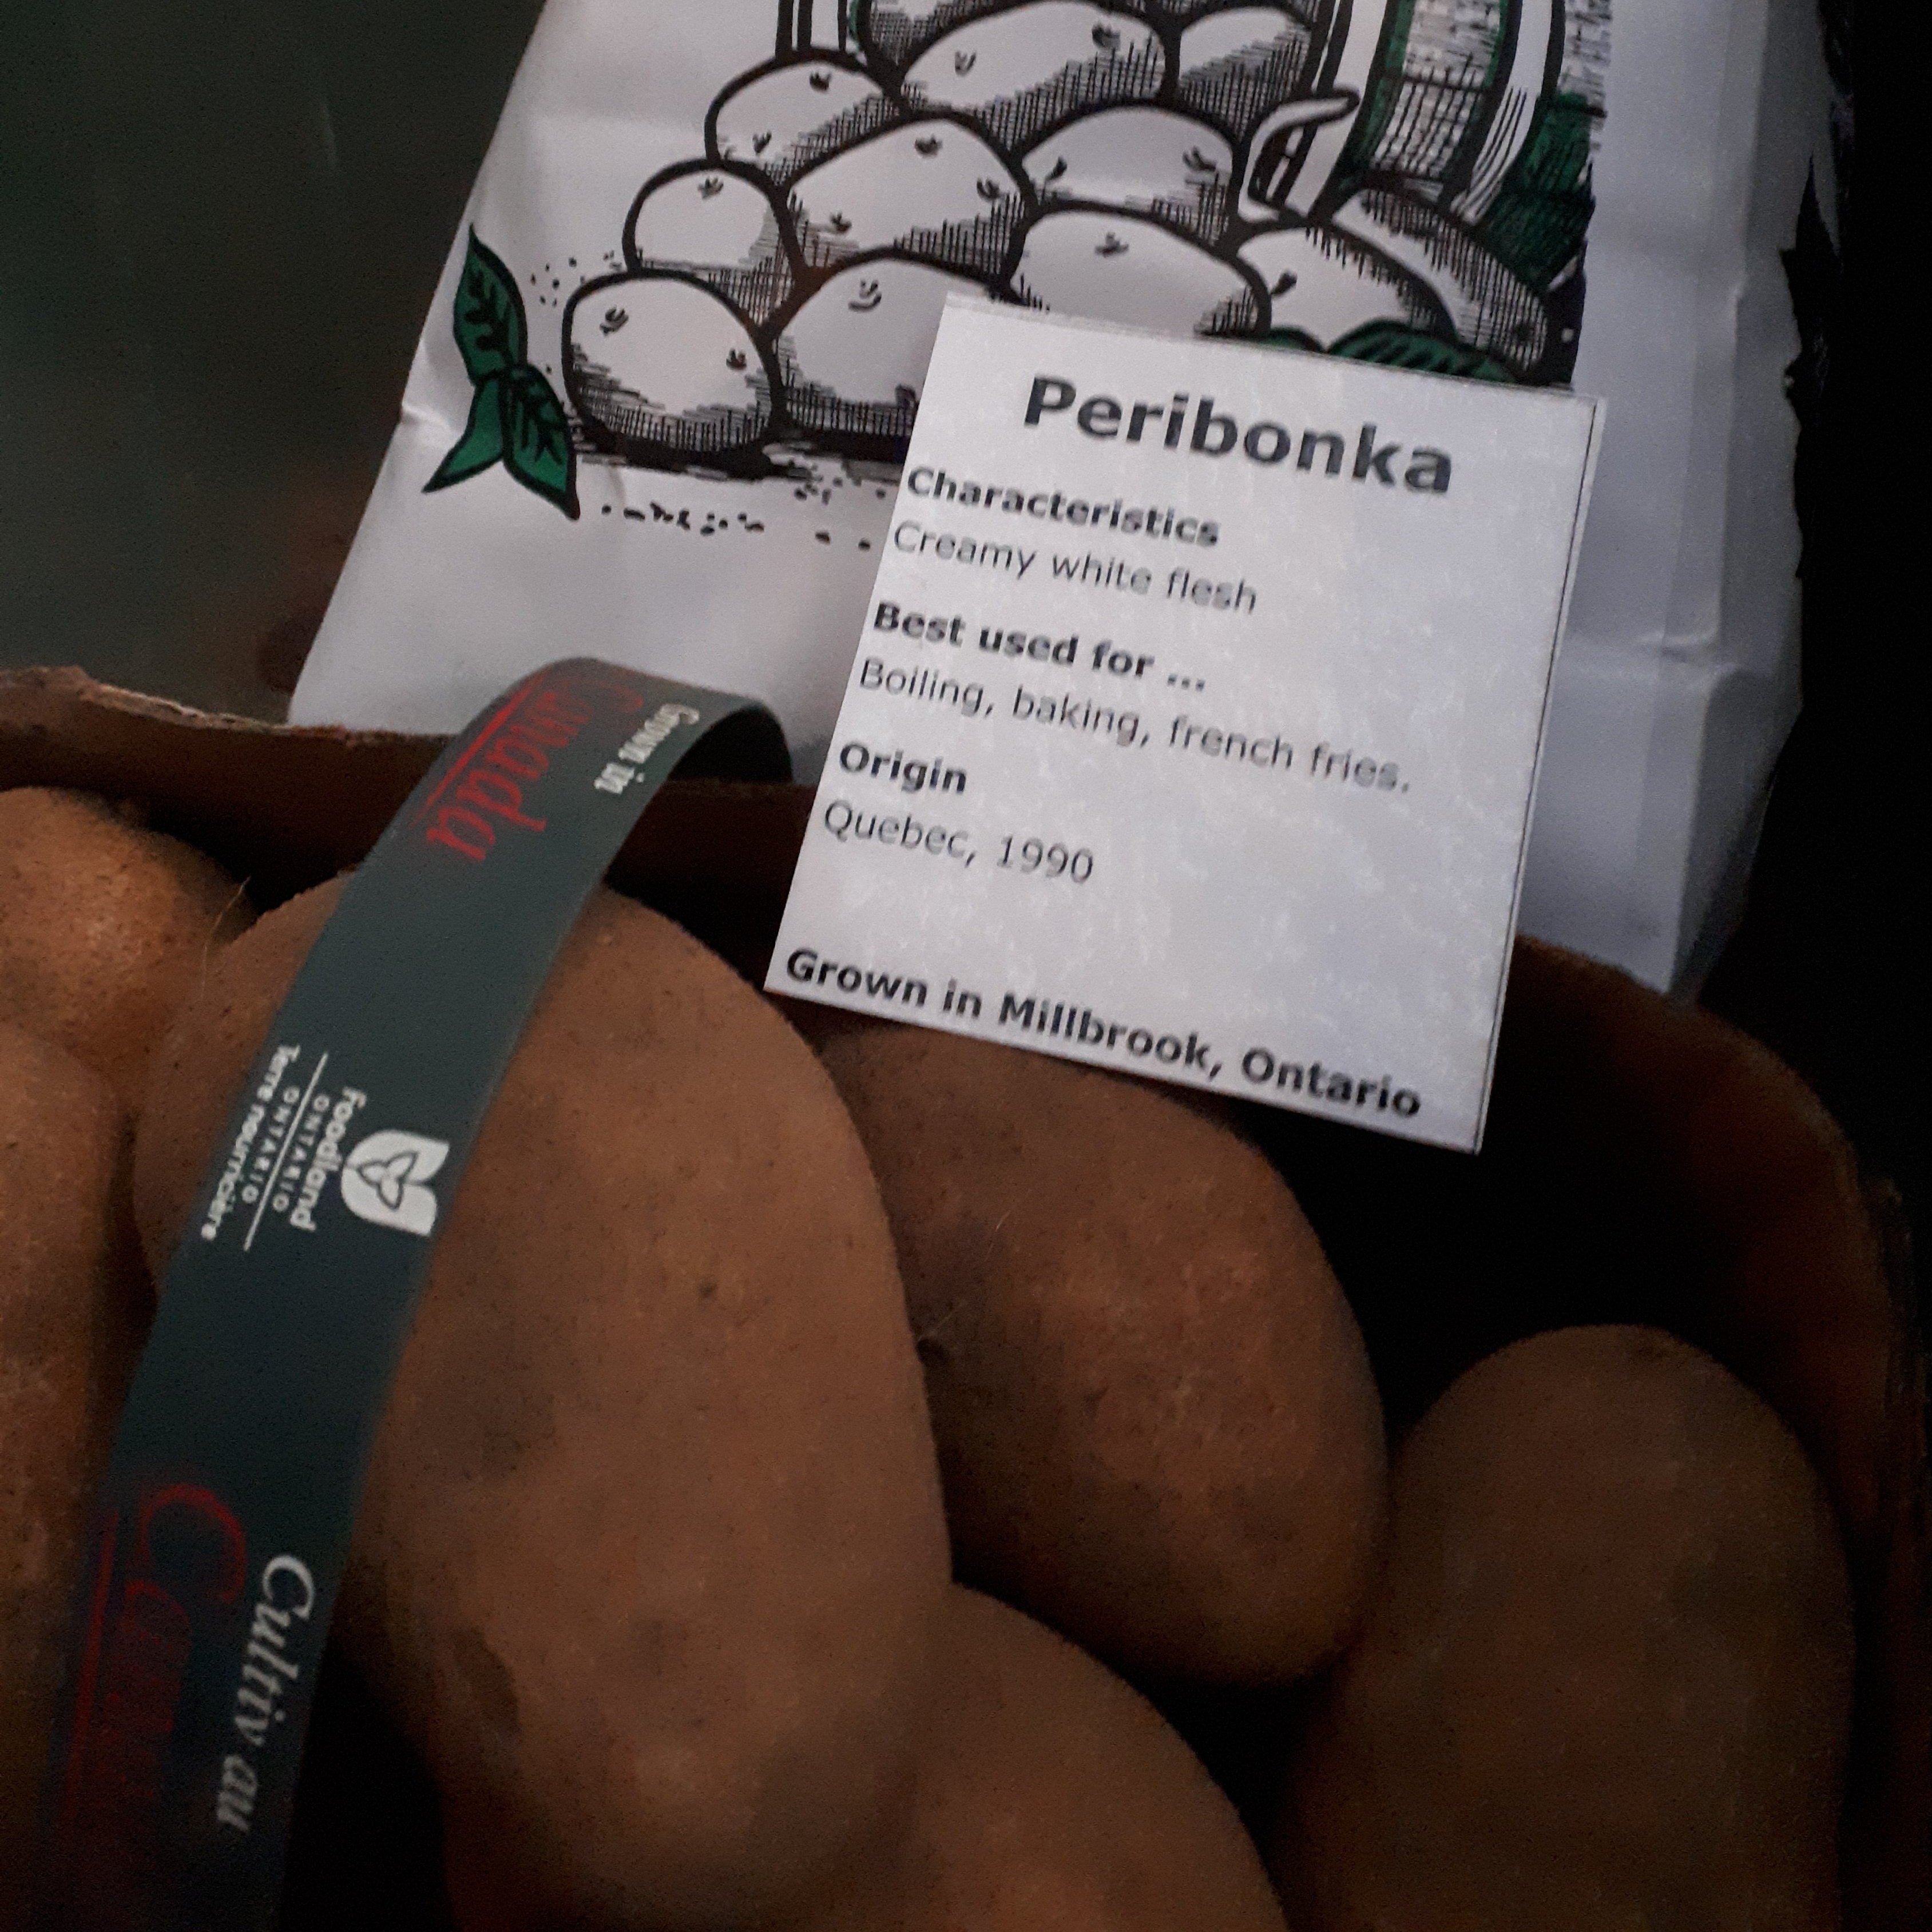 Carton of Peribonka potatoes